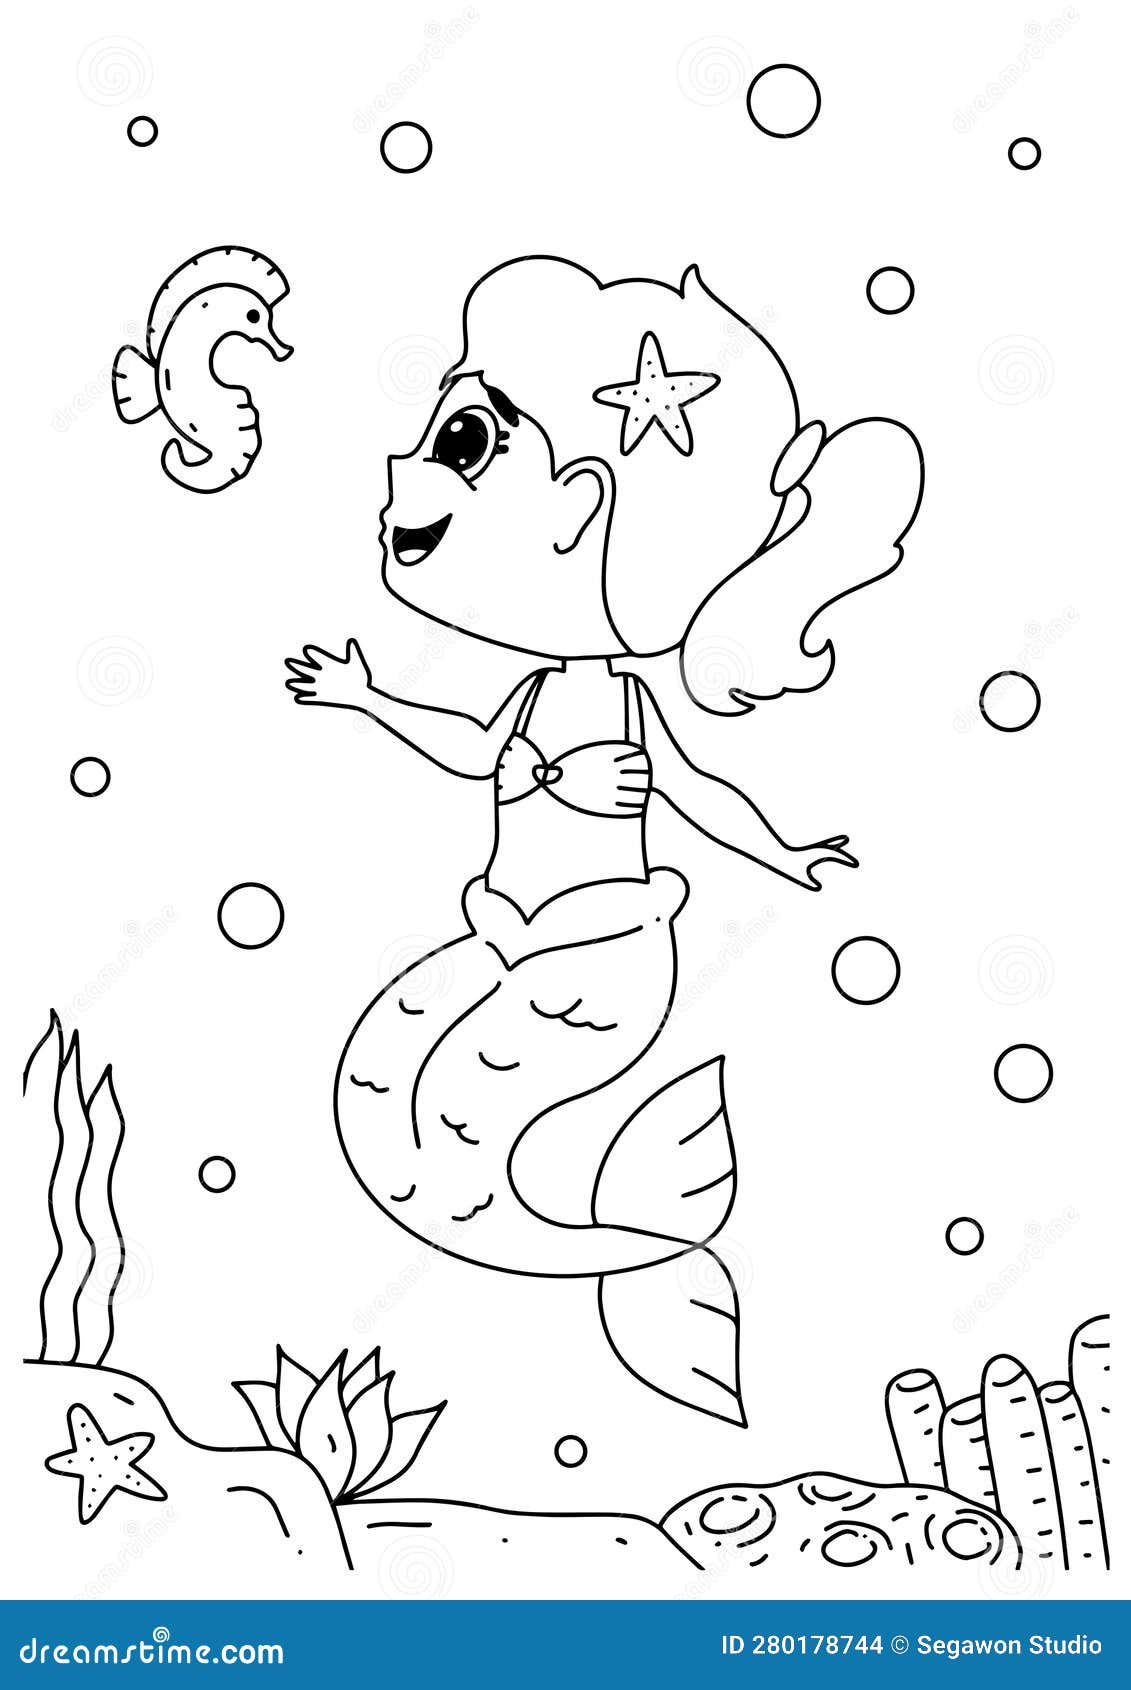 Sereia com ilustração de desenhos animados de página para colorir de peixe